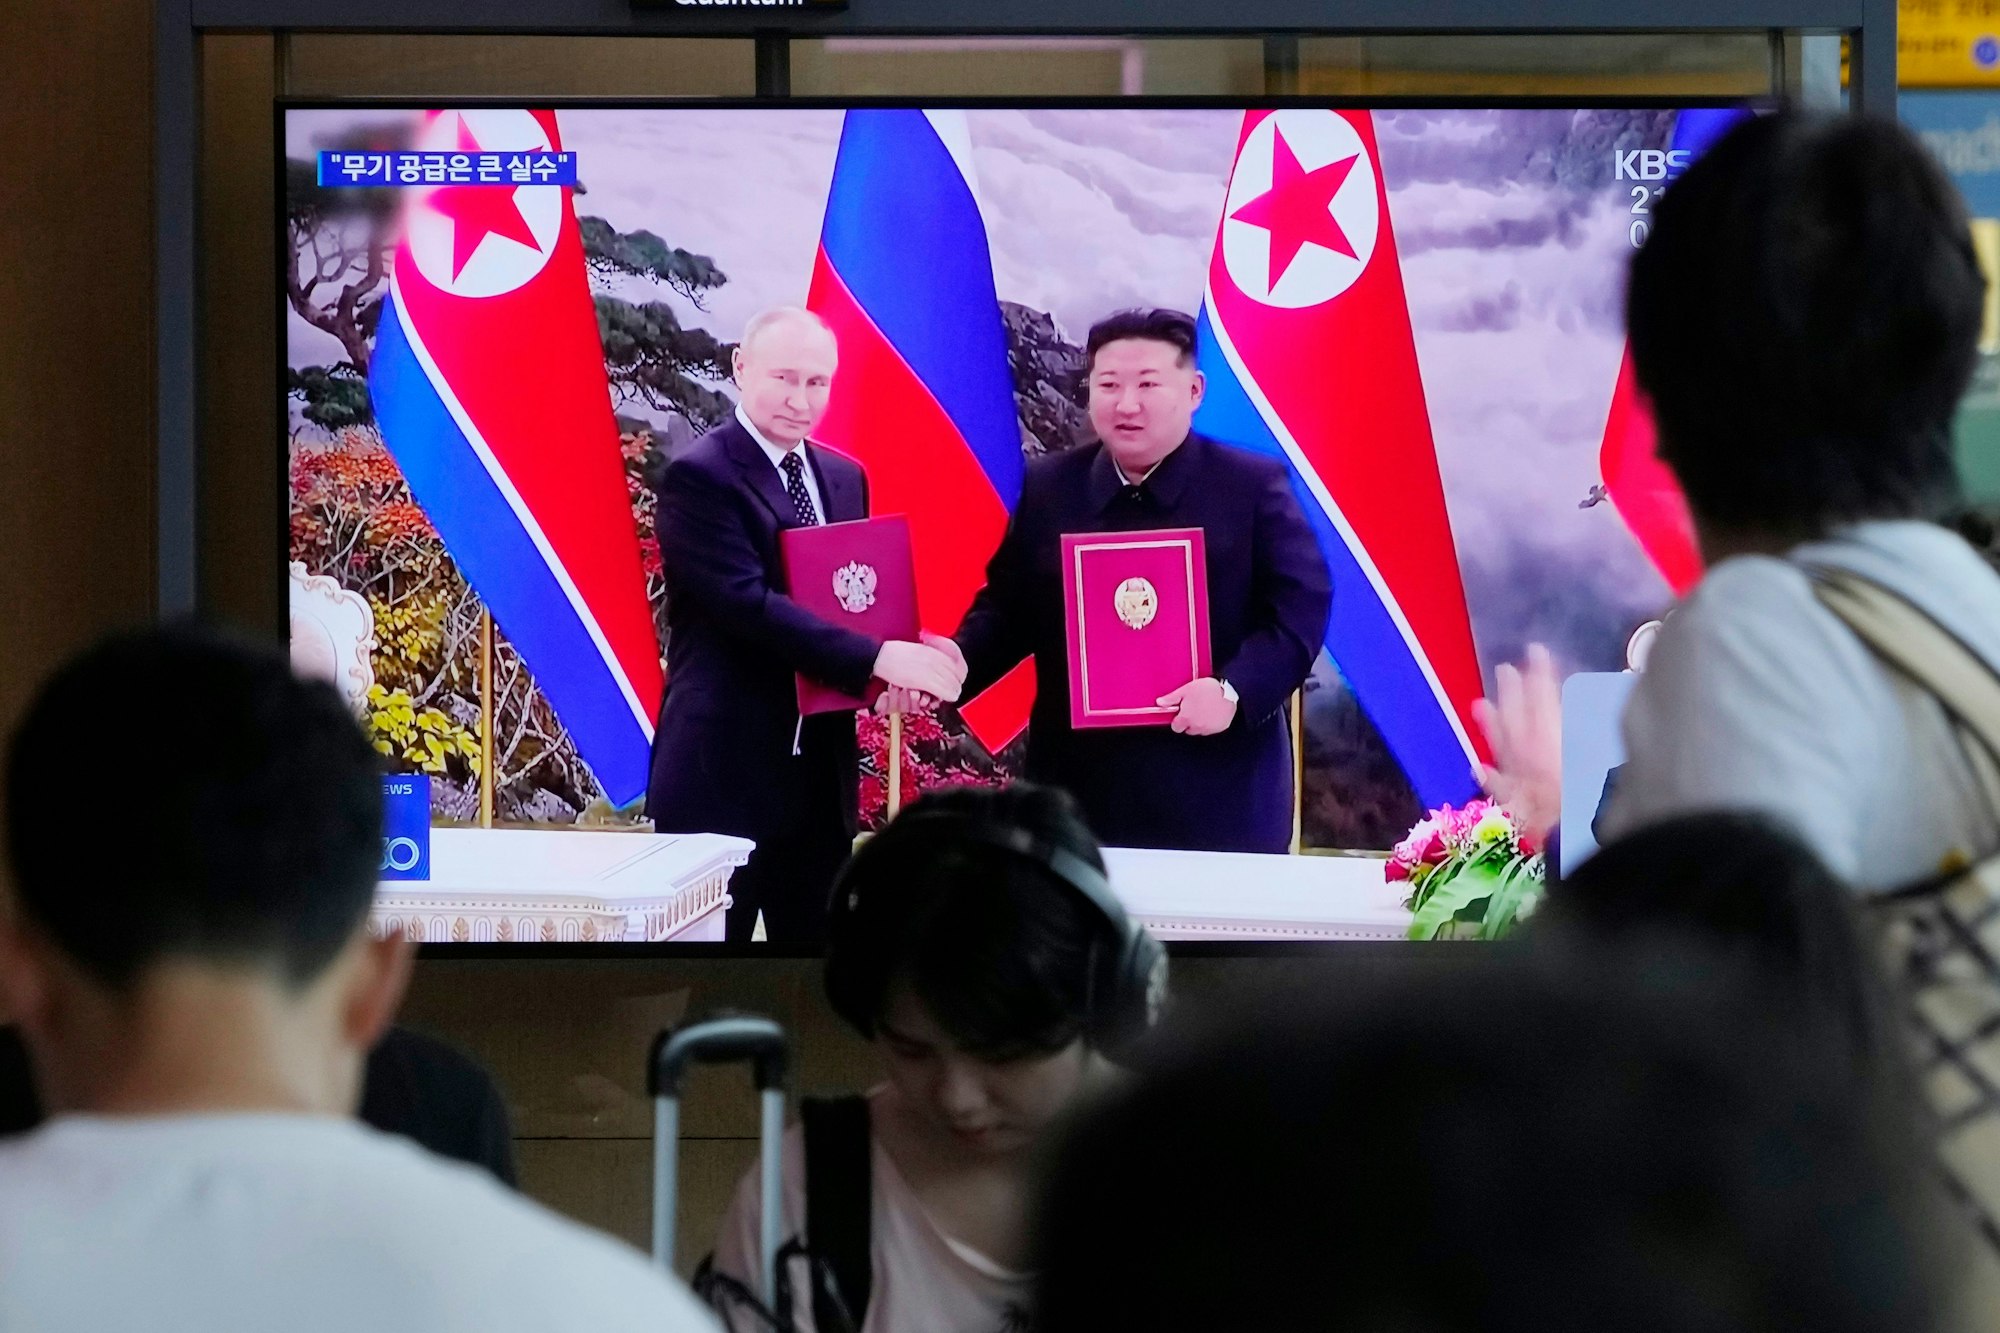 Wladimir Putin und Kim Jong Un besiegeln ihr neues Bündnis, wie hier in einer südkoreanischen Newssendung am 21. Juni zu sehen ist.